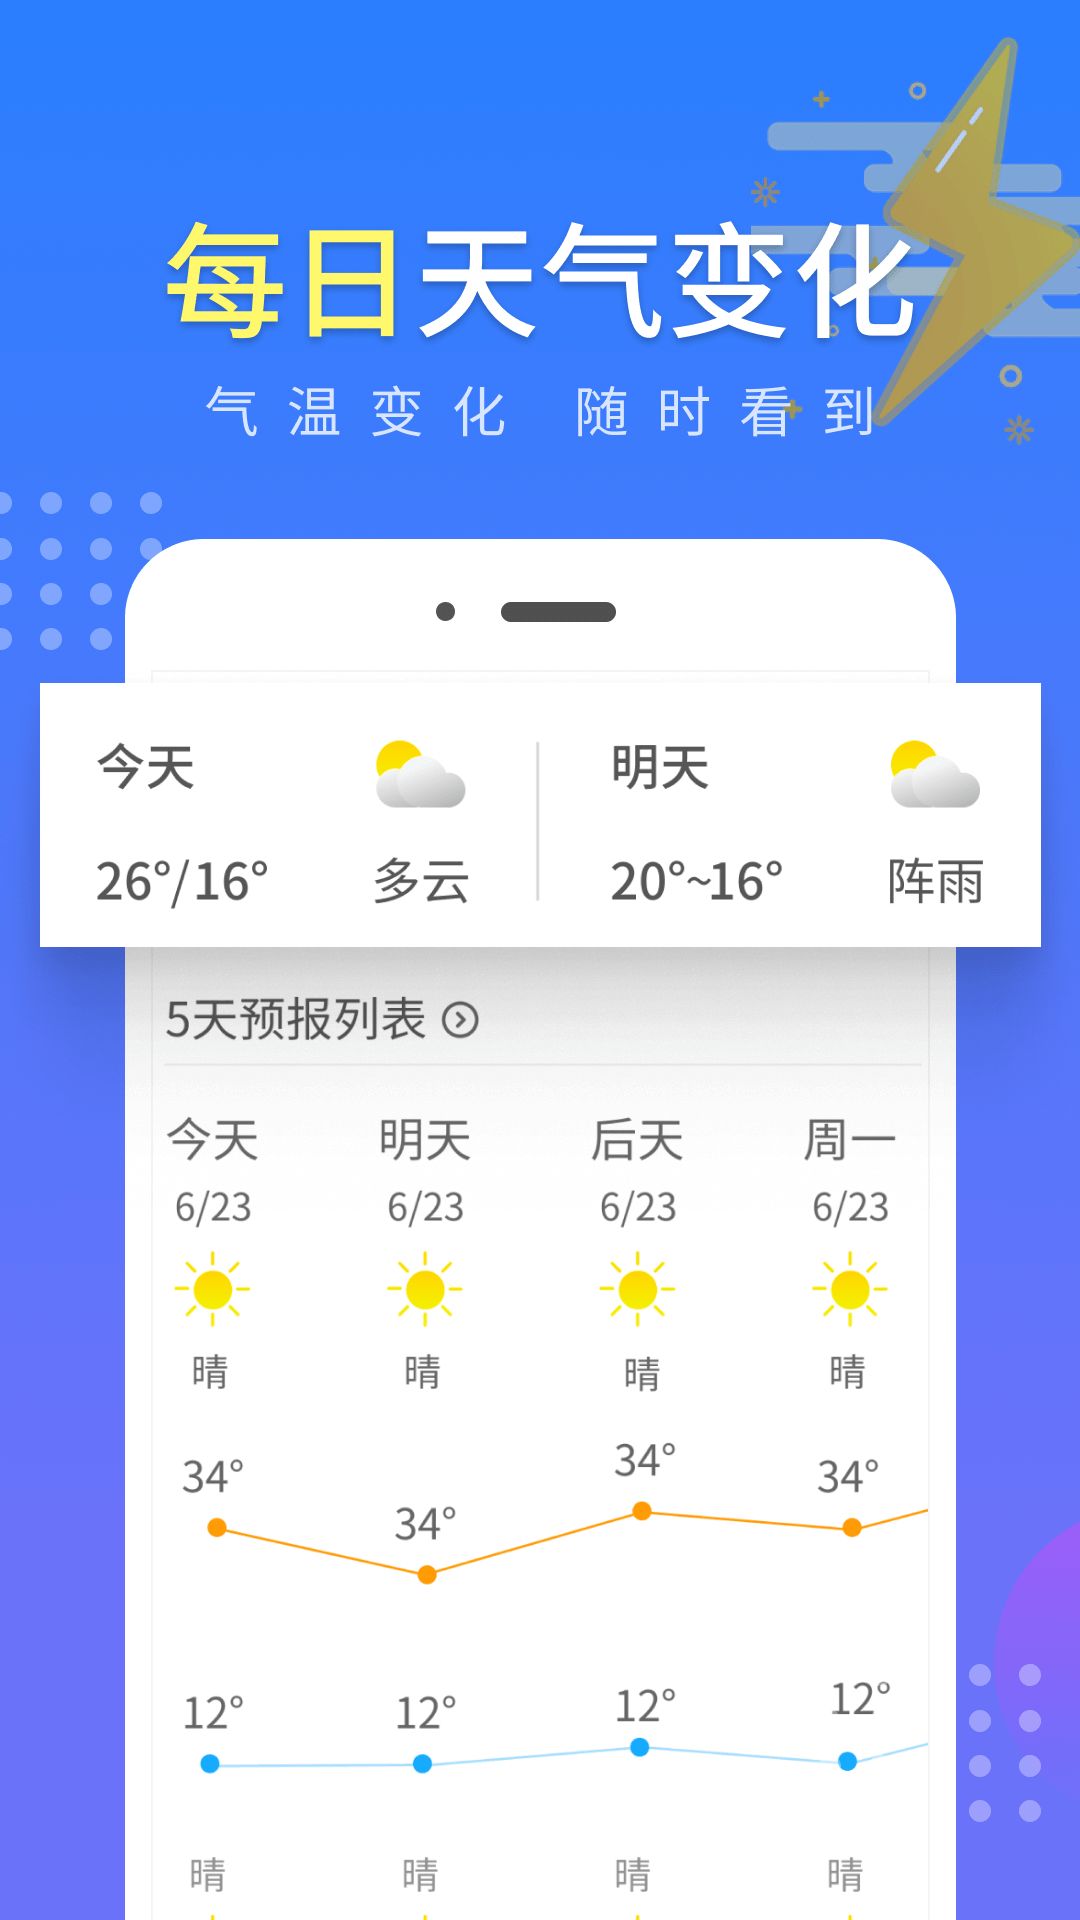 晴朗气象通app图2